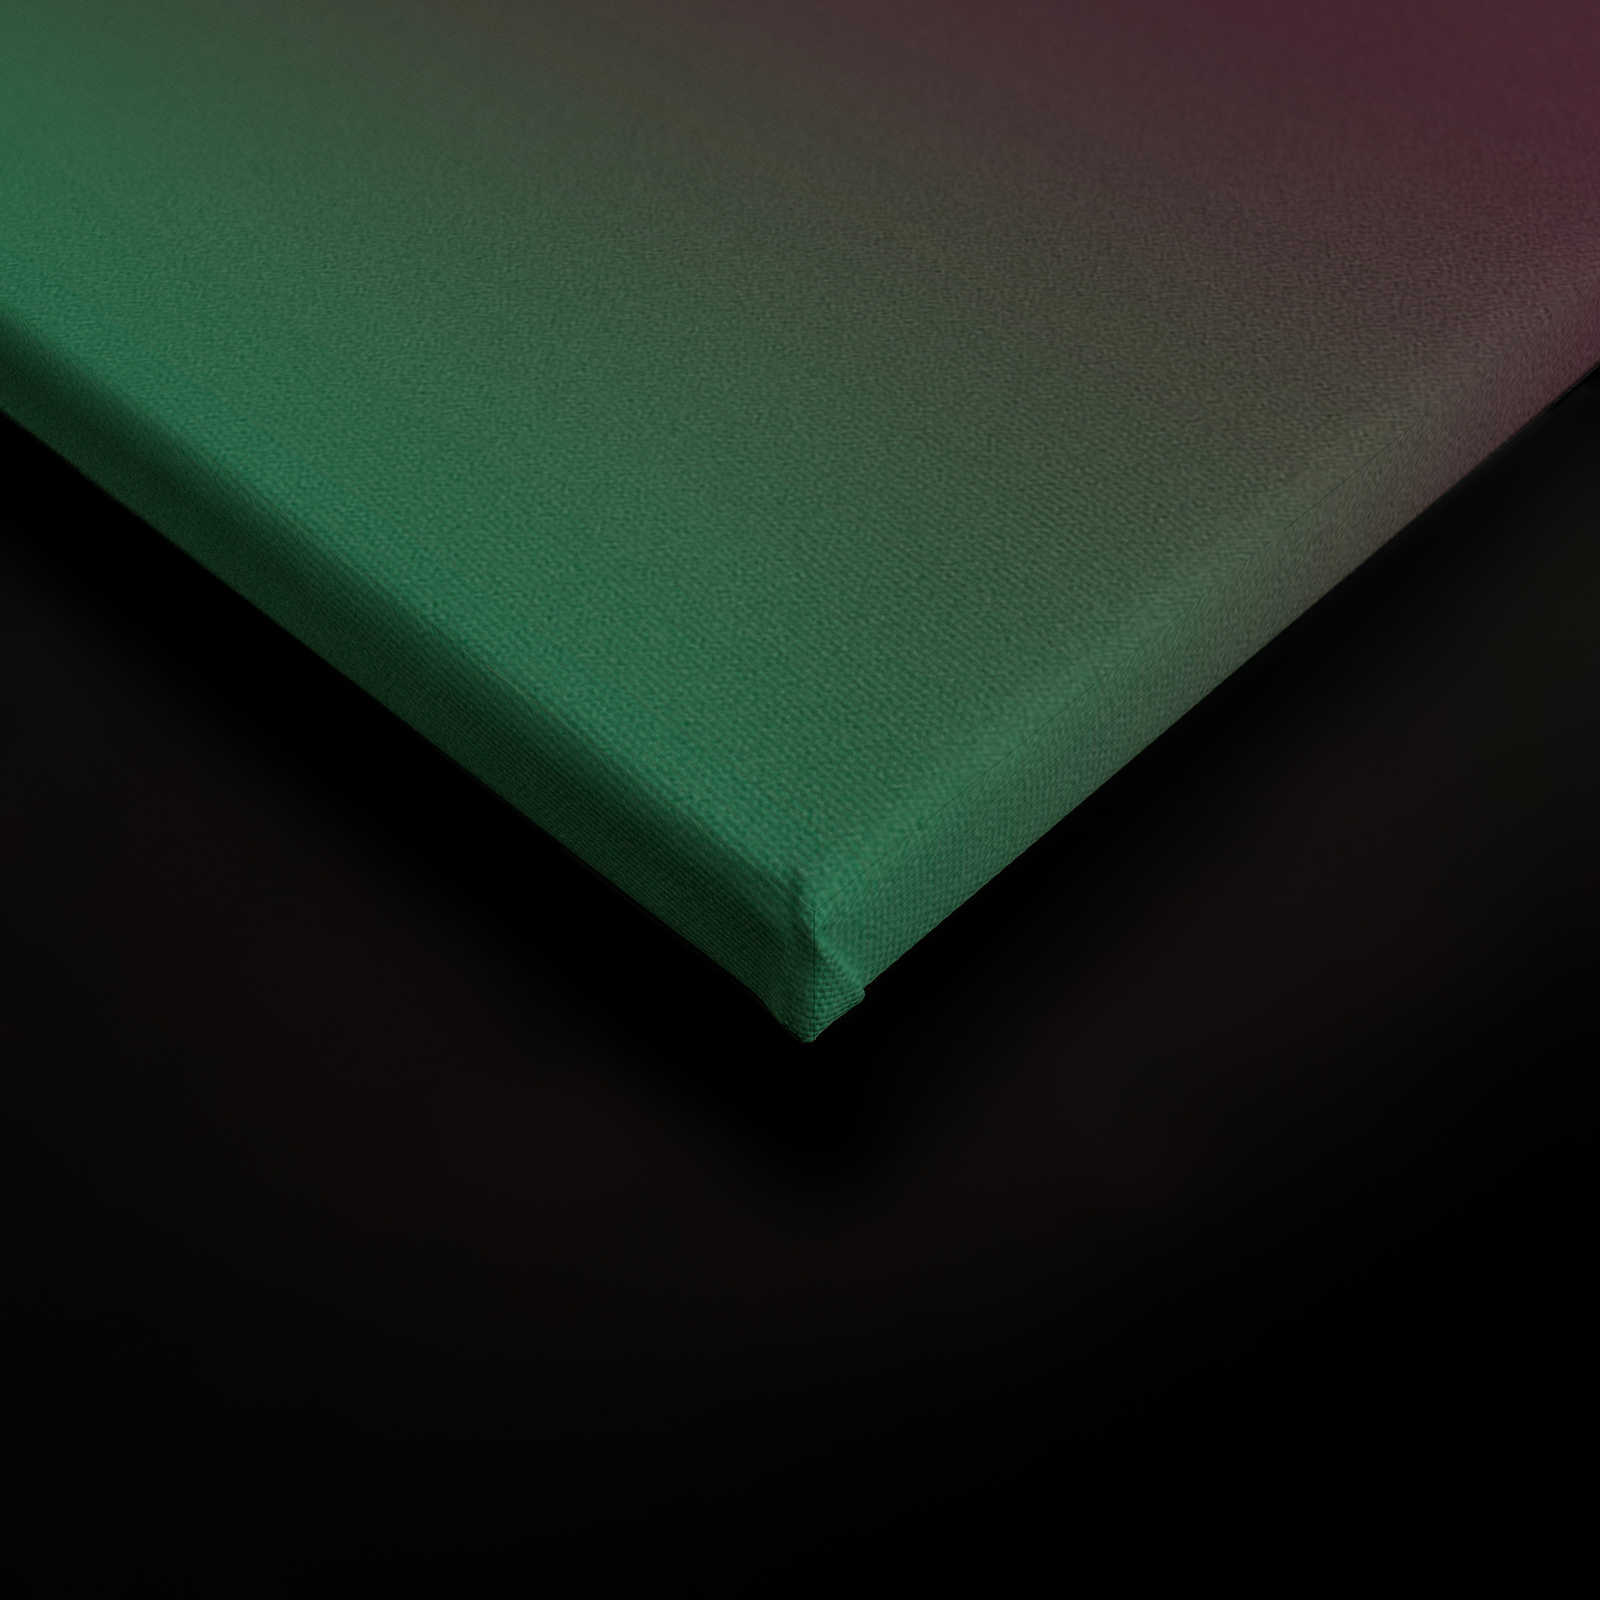             Over the Rainbow 2 - Bont streepdesign op canvas met kleurverloop - 1.20 m x 0.80 m
        